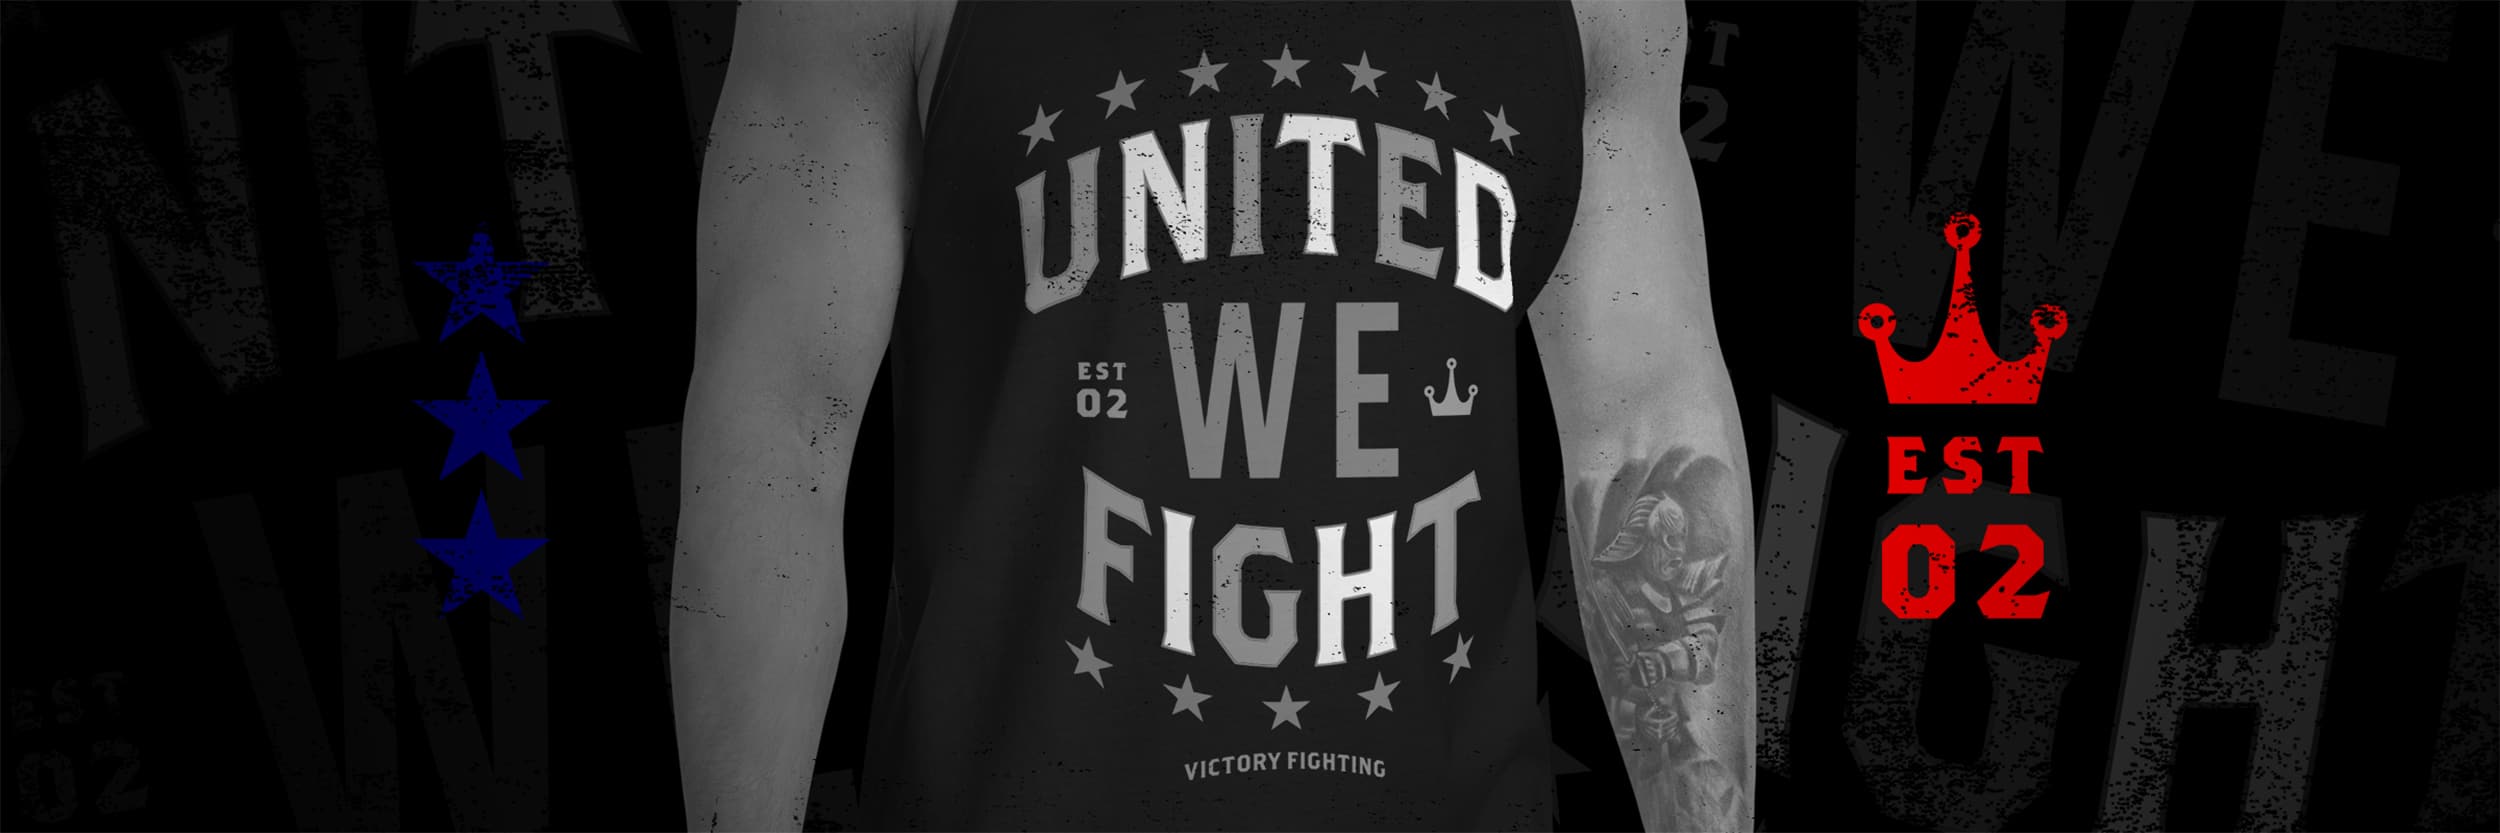 VFC United We Fight banner